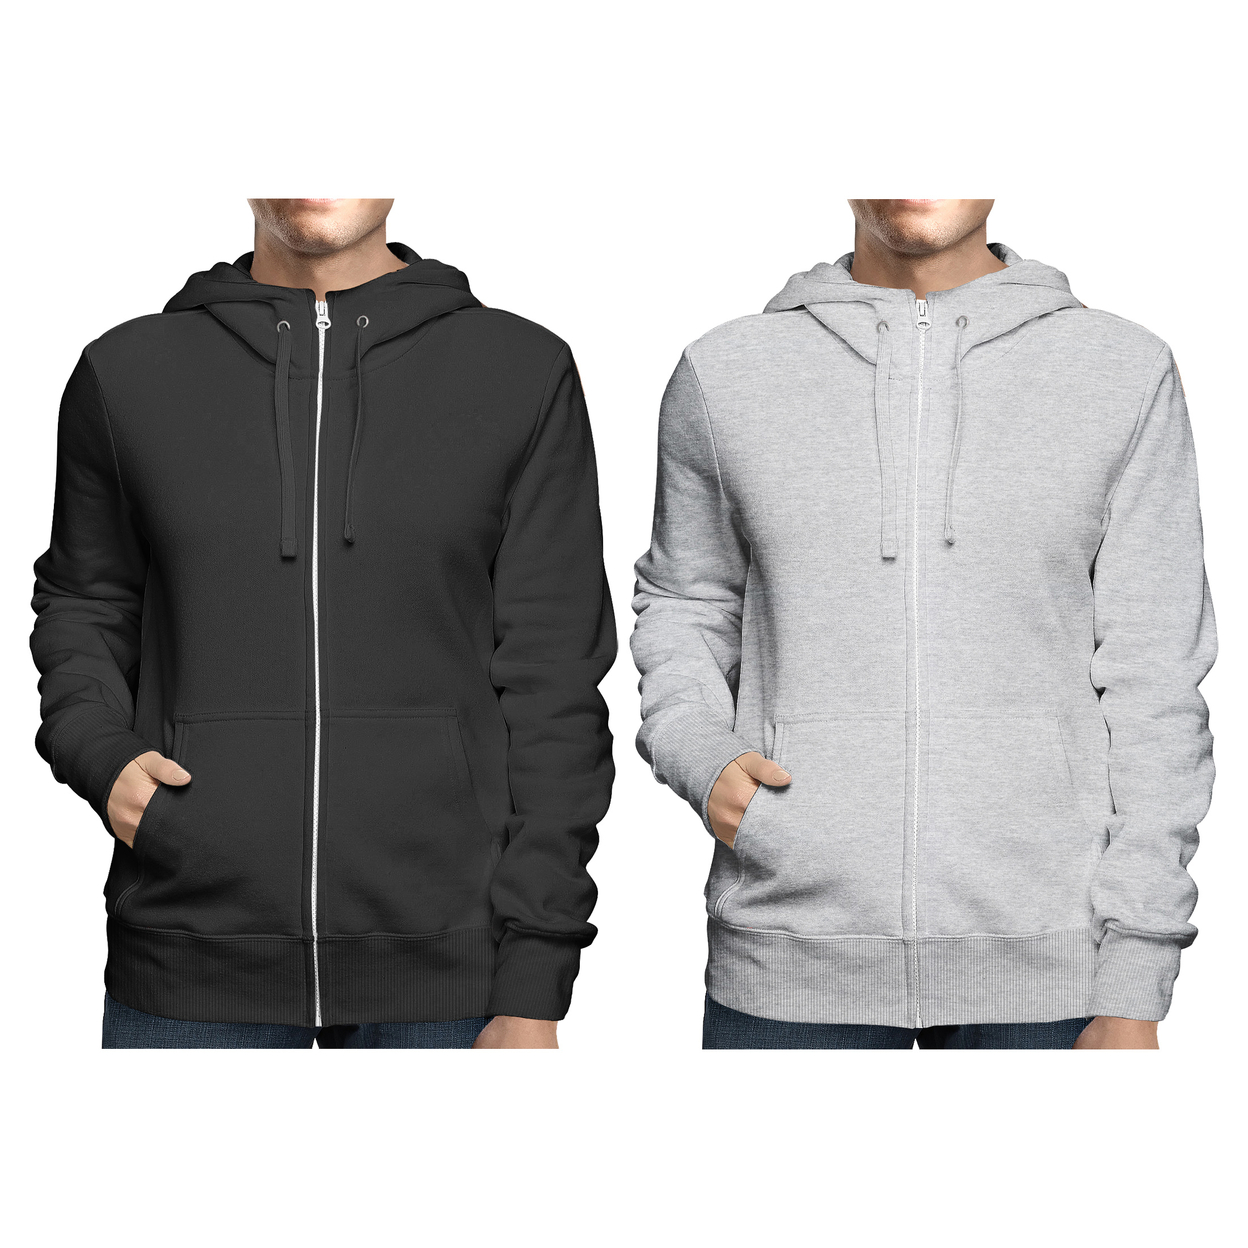 2-Pack: Men's Winter Warm Soft Full Zip-Up Fleece Lined Hoodie Sweatshirt - Black & Navy, Large